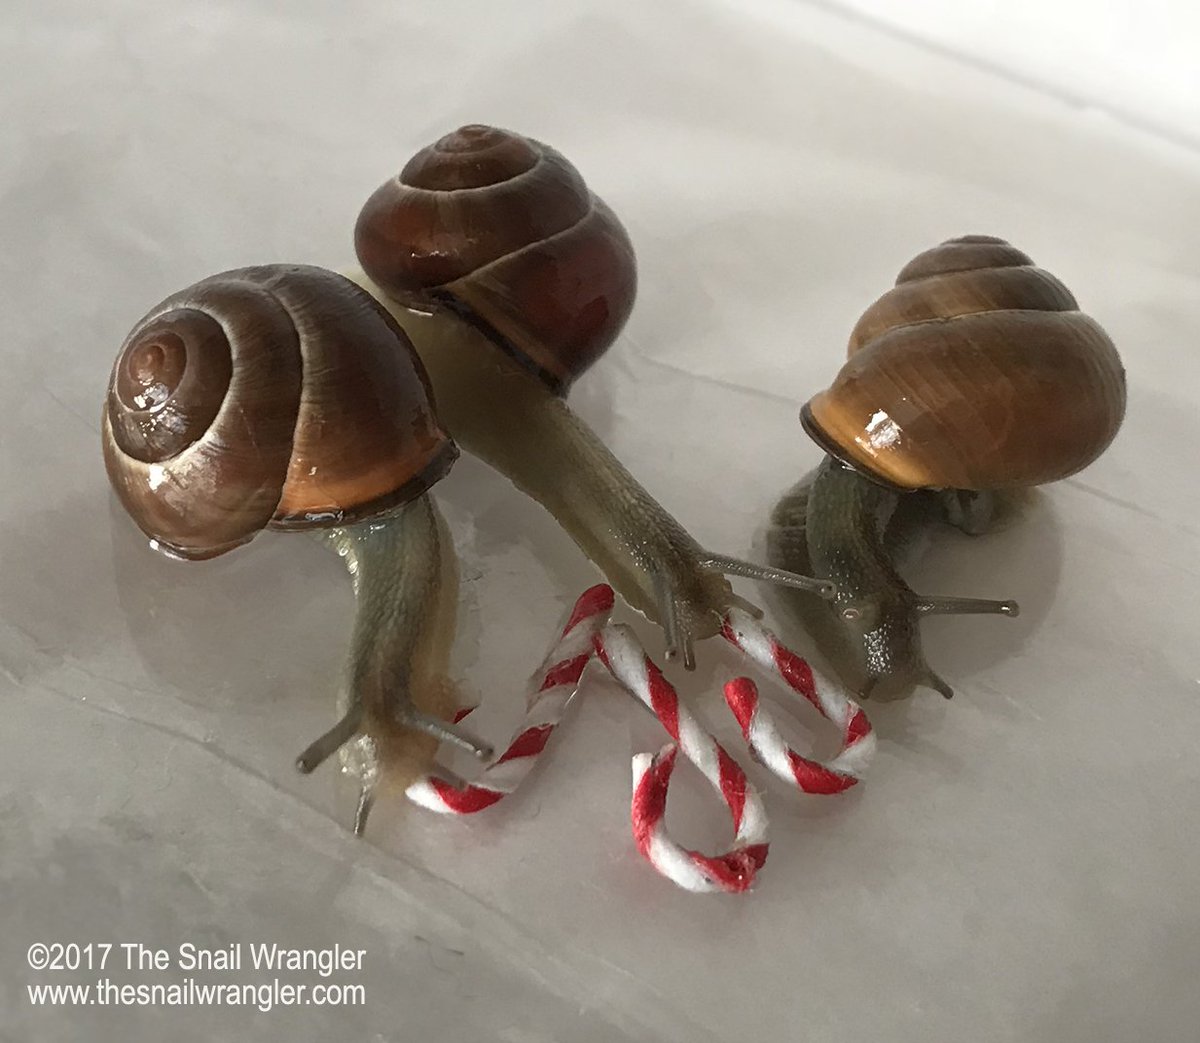 The Snail Wrangler (@snail_wrangler) / Twitter